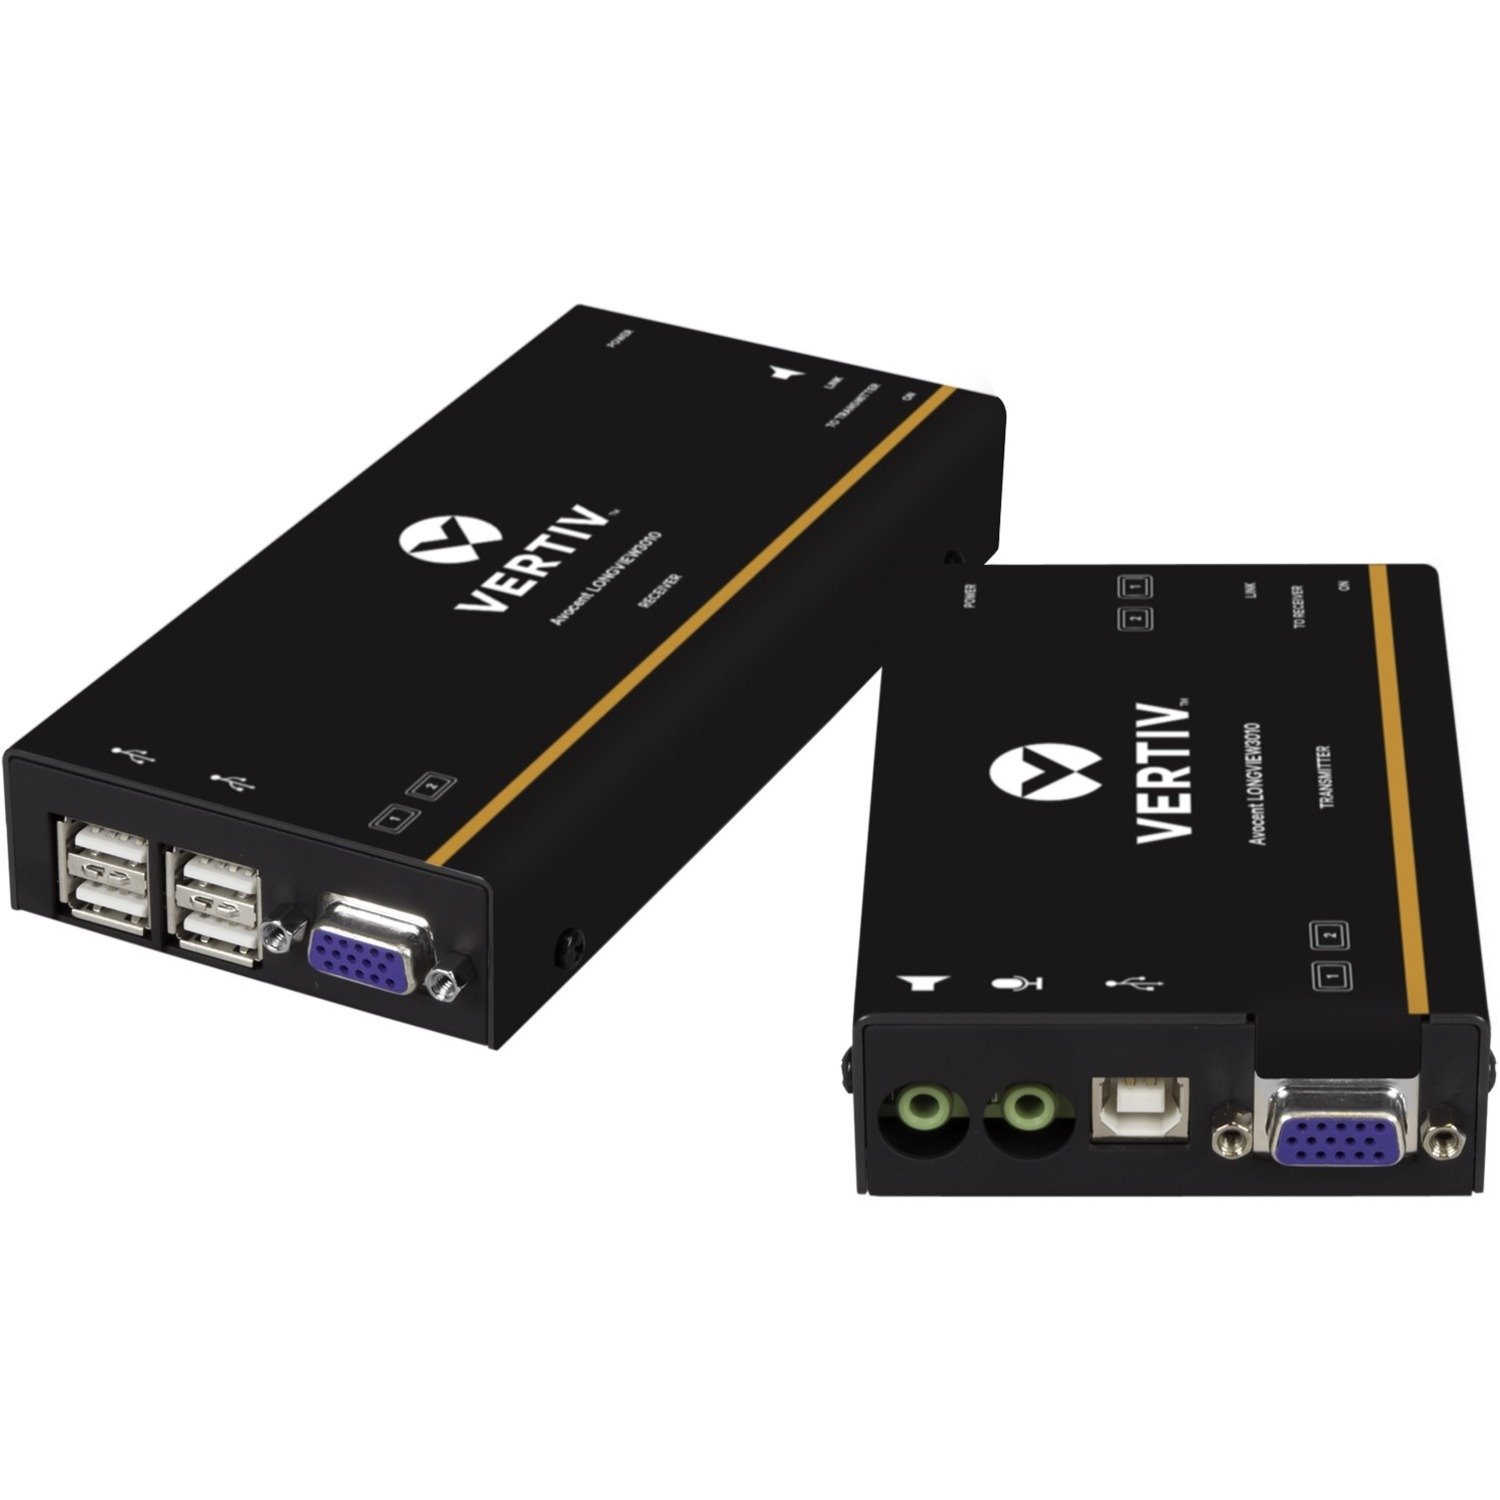 Avocent LV 3000 Series High Quality KVM Extender Kit with Receiver & Transmitter